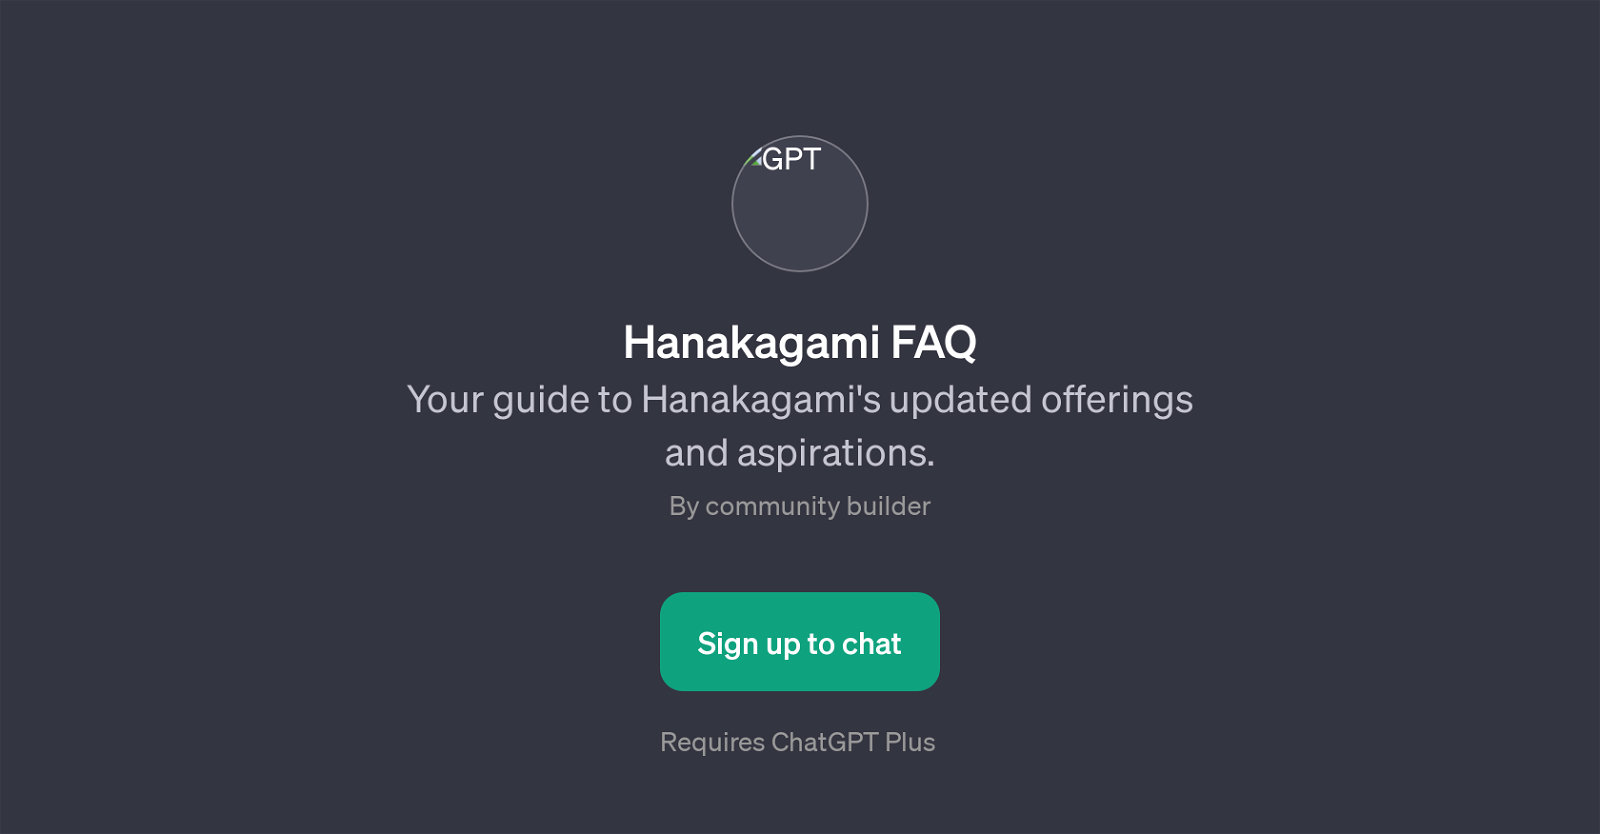 Hanakagami FAQ website